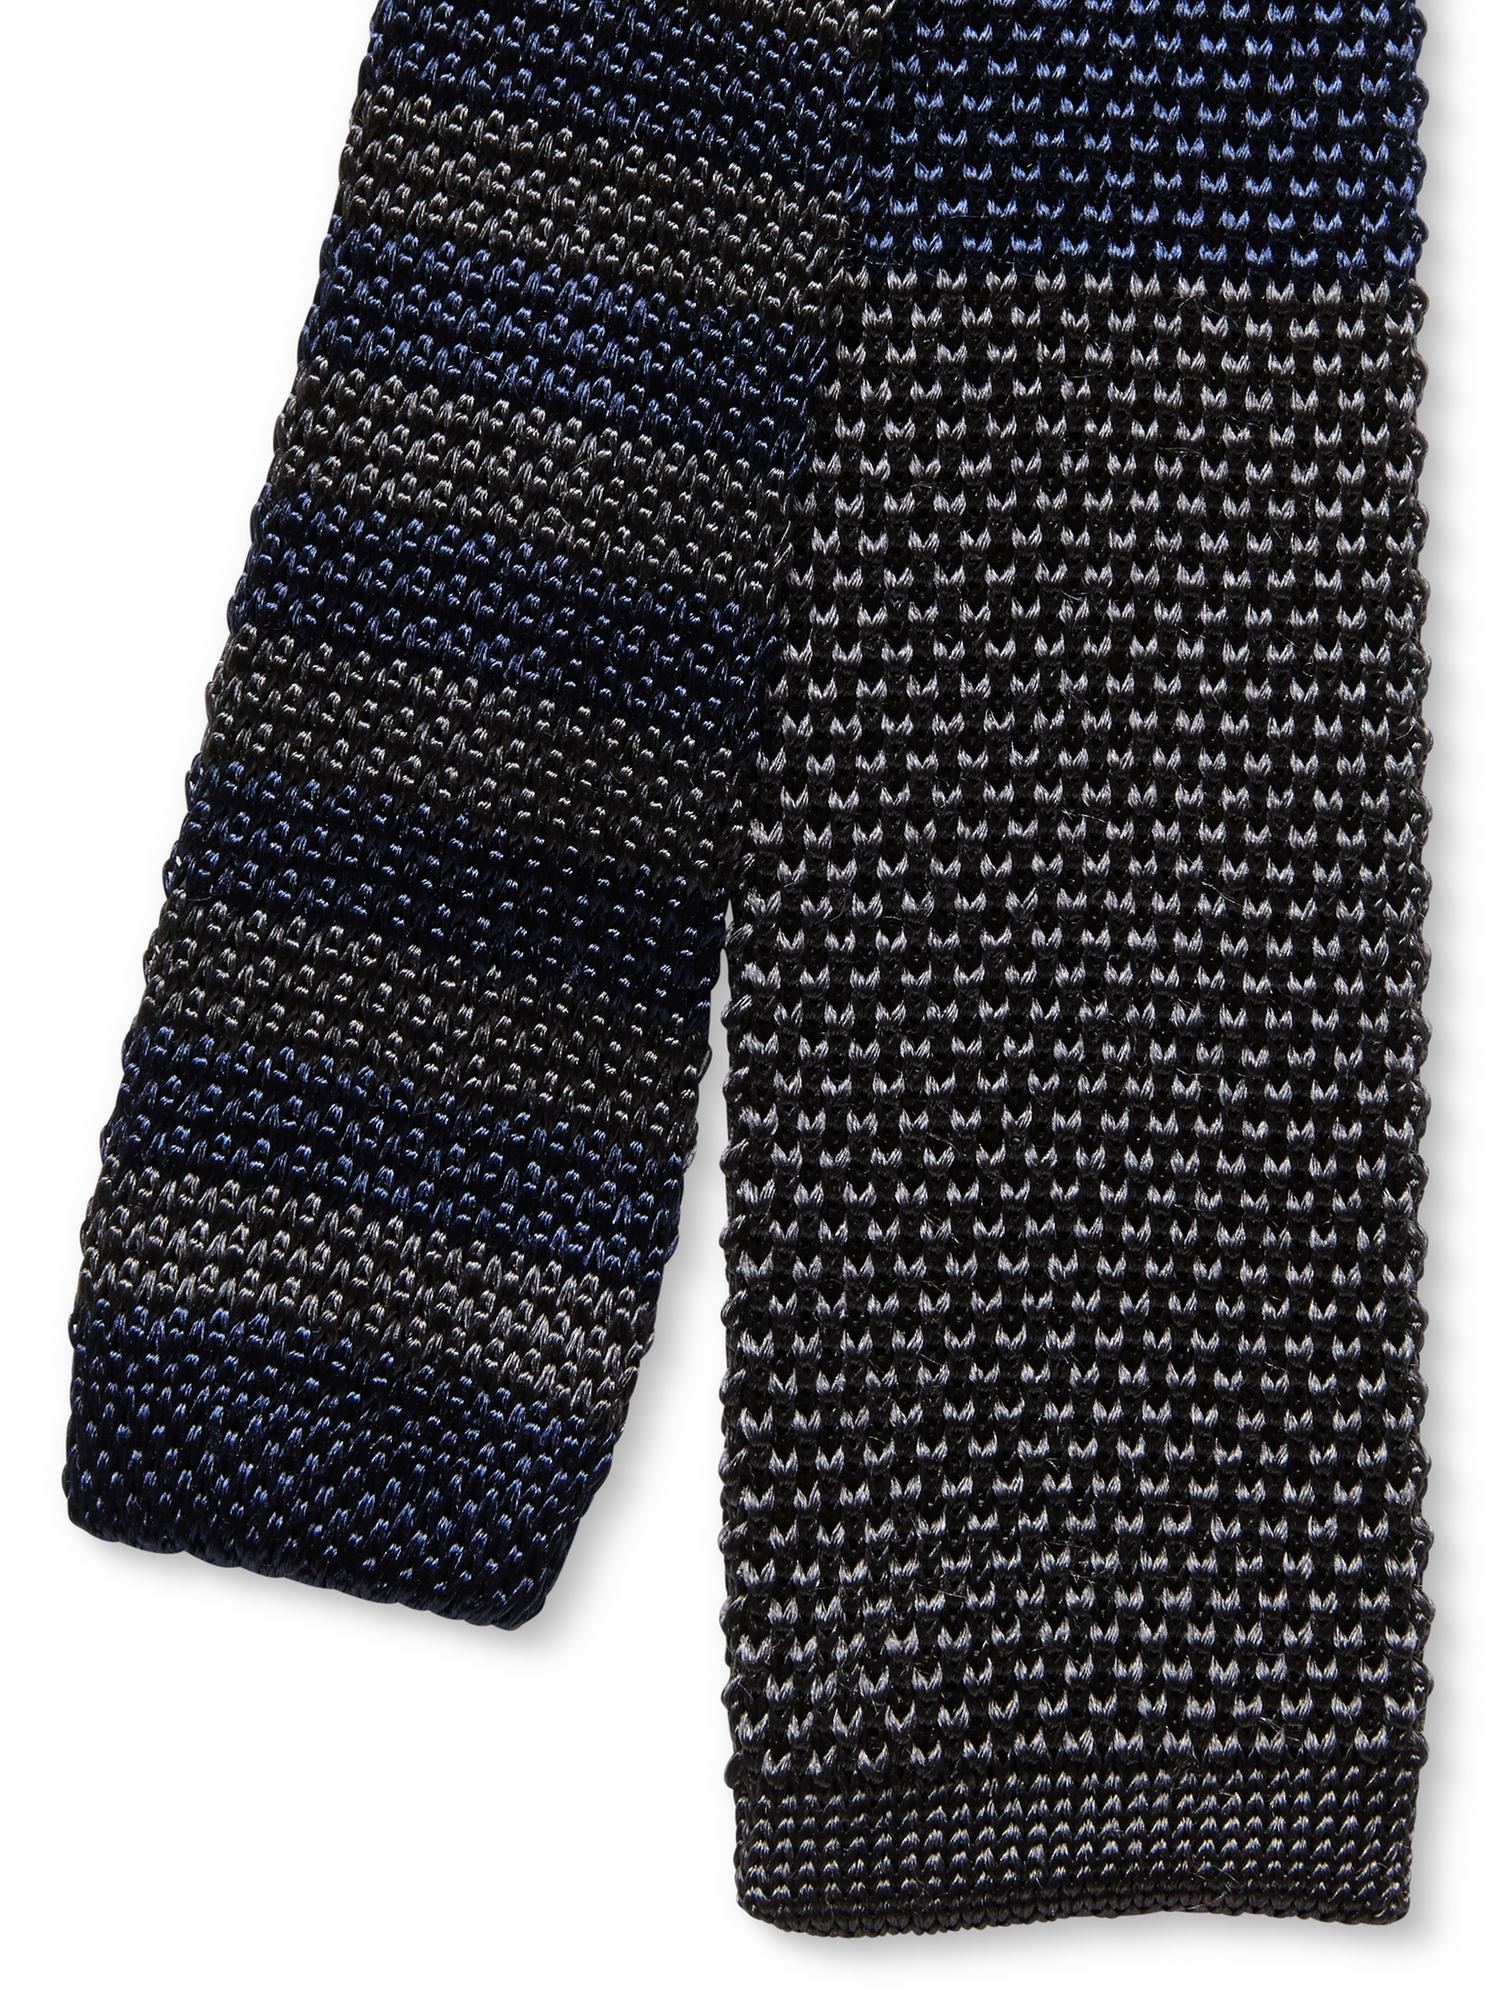 Knit Stripe Skinny Tie